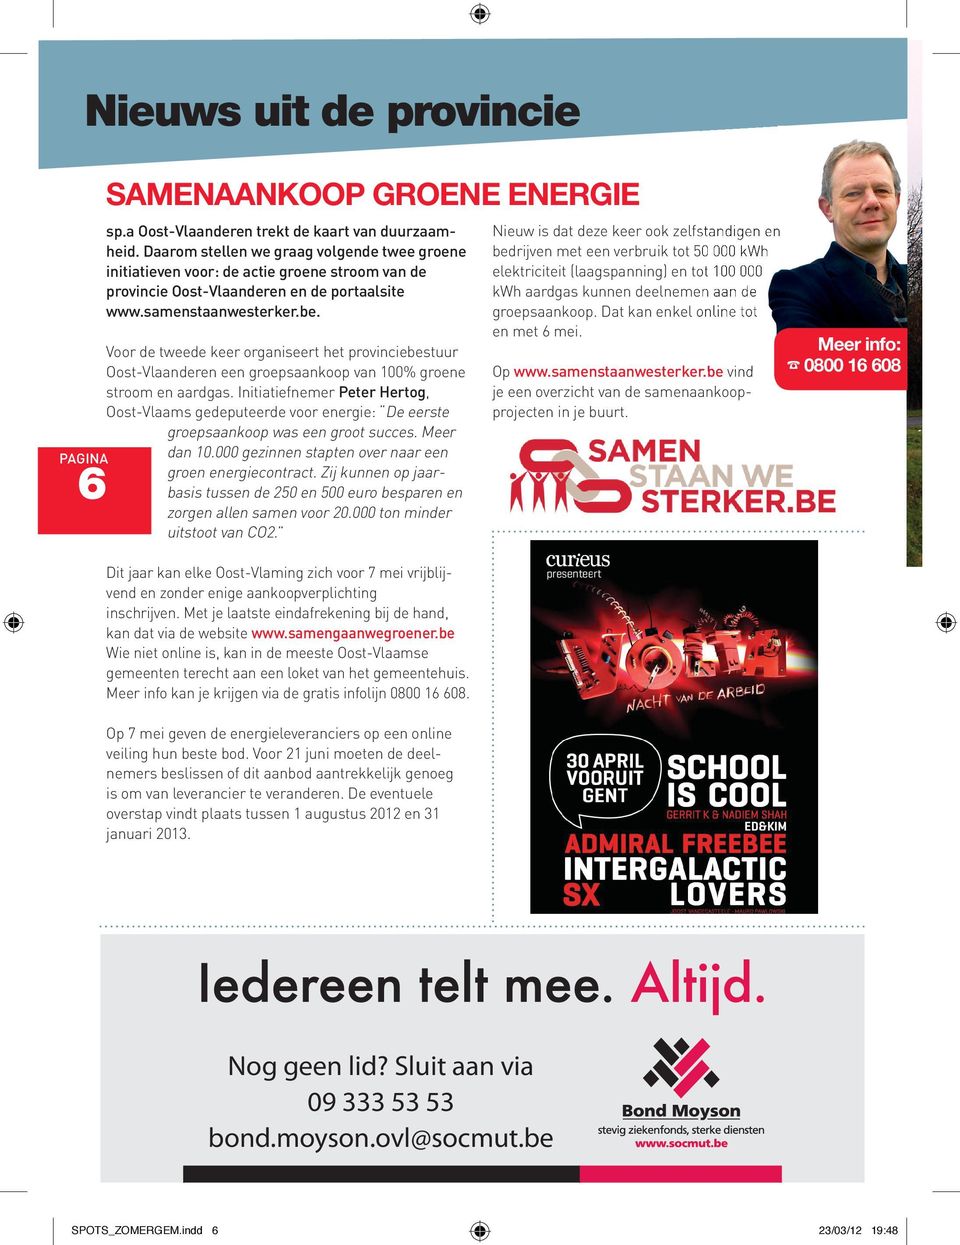 Voor de tweede keer organiseert het provinciebestuur Oost-Vlaanderen een groepsaankoop van 100% groene stroom en aardgas.